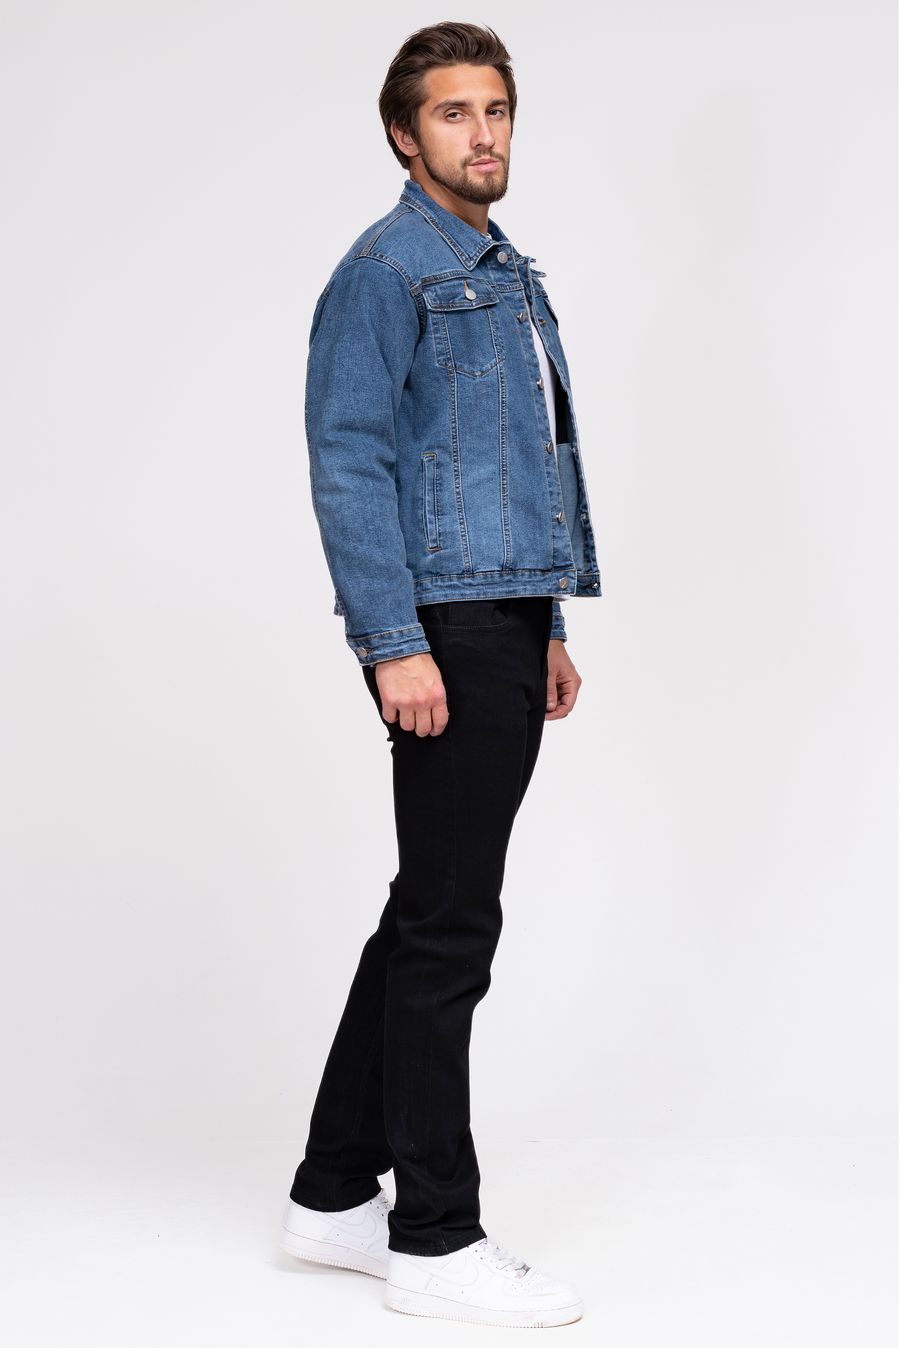 Пиджак мужской (джинсовка) LRZBS 2360 - фото 2